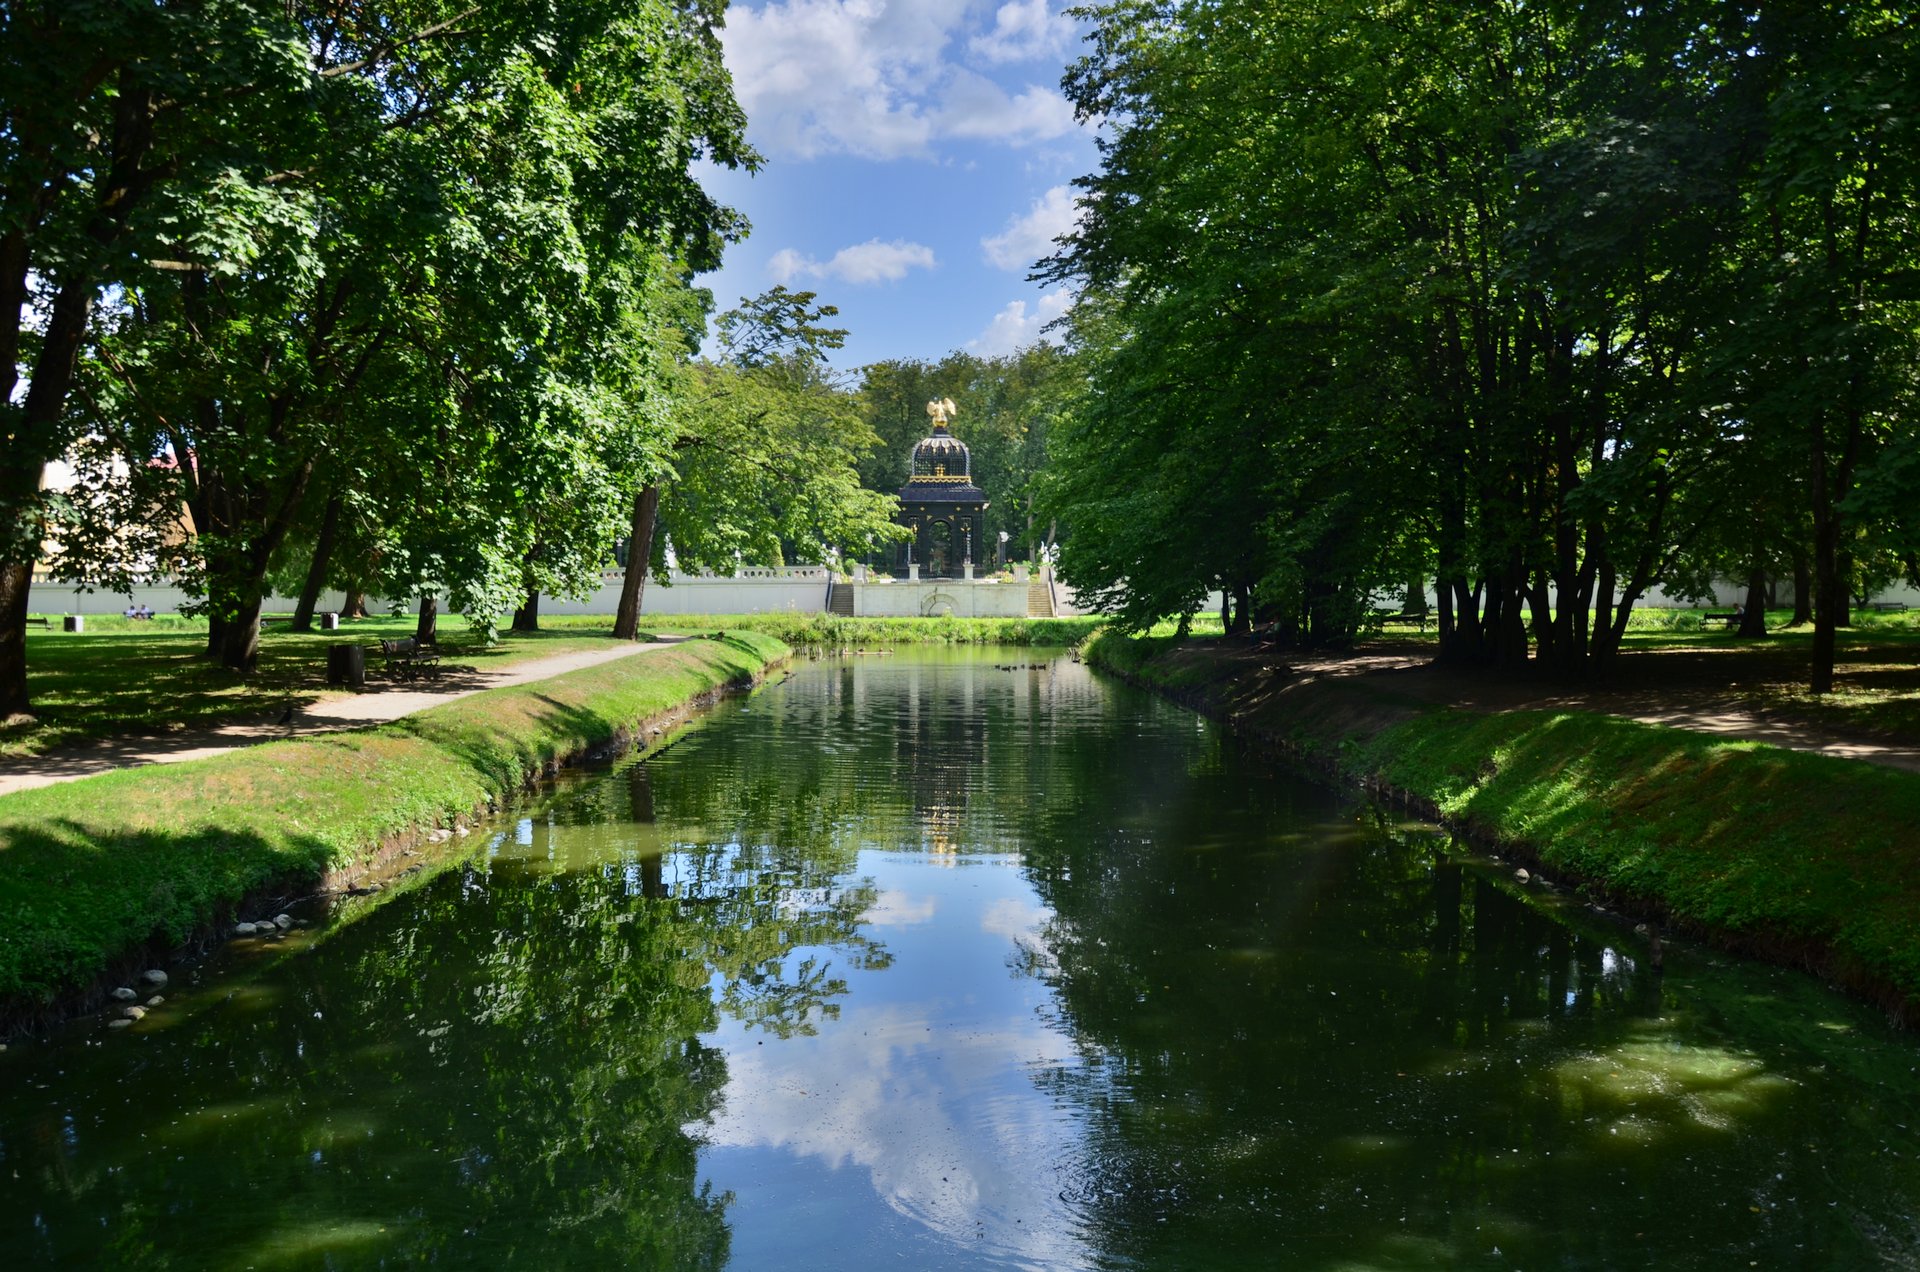 Białystok Pałac Branickich w Białymstoku ogród Wersal Podlaskifree photo darmowe zdjęcie